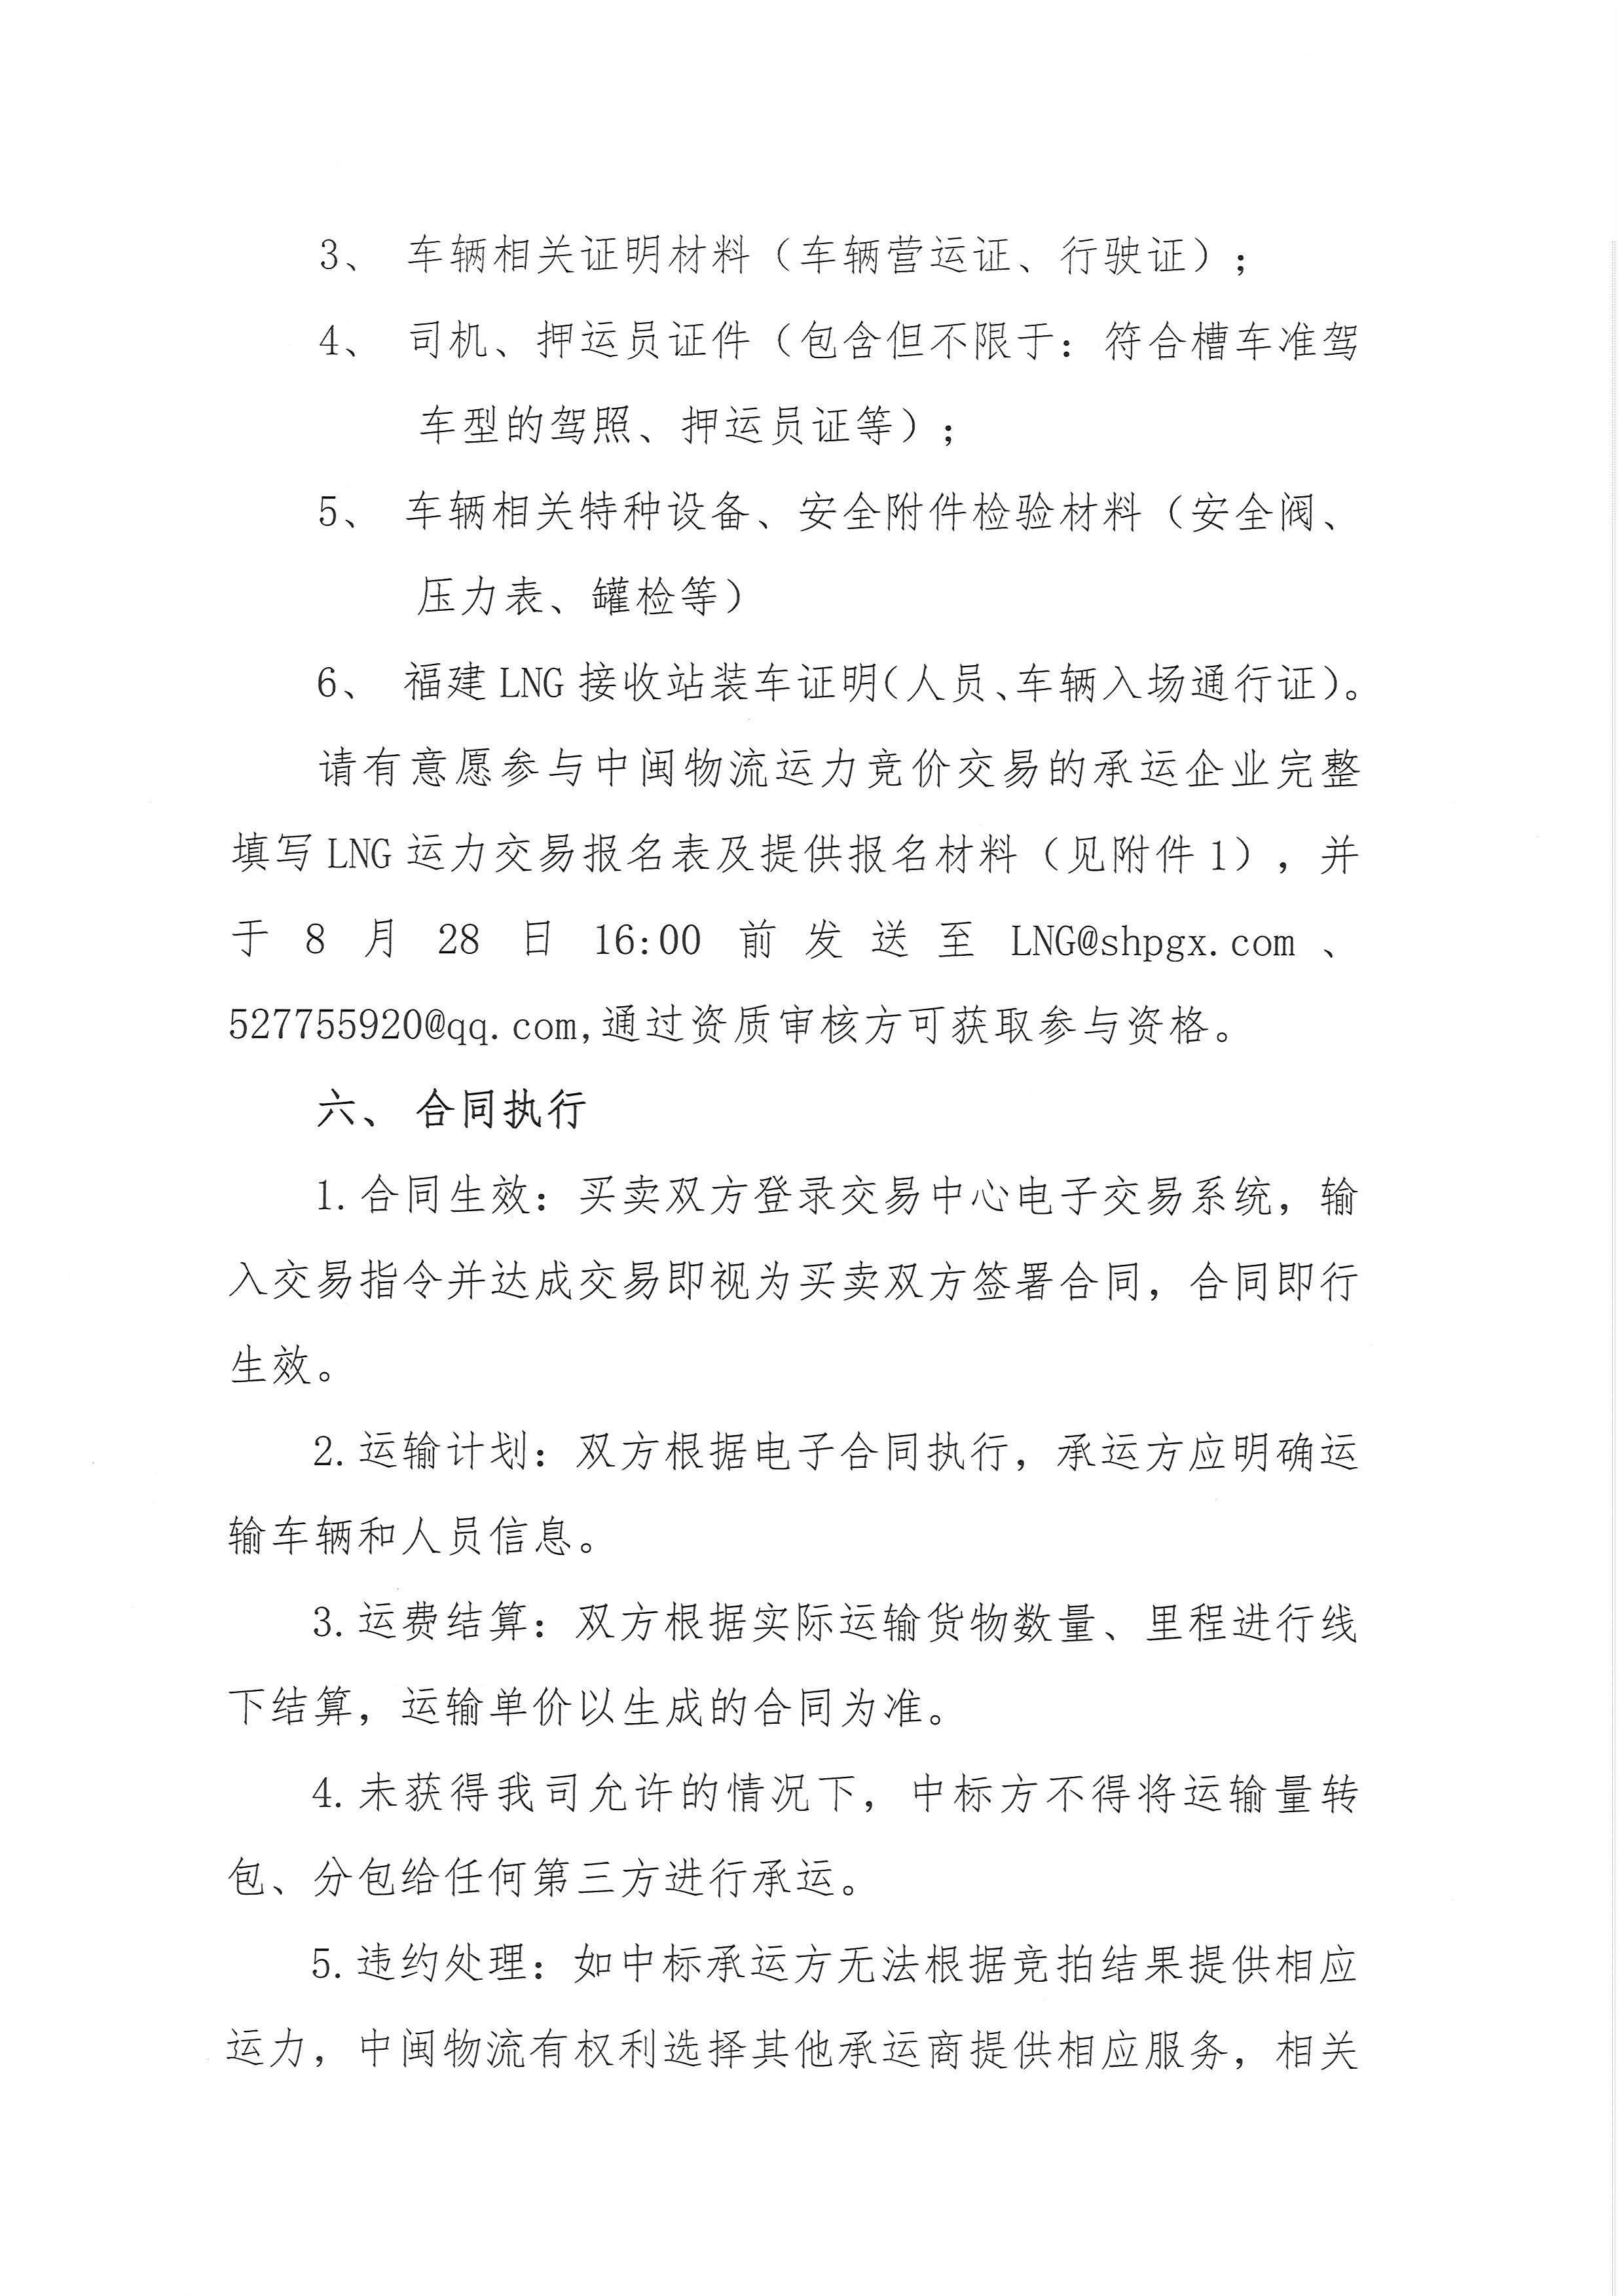 福建中闽物流有限公司-9、10月份竞价公告(3)_页面_5.png